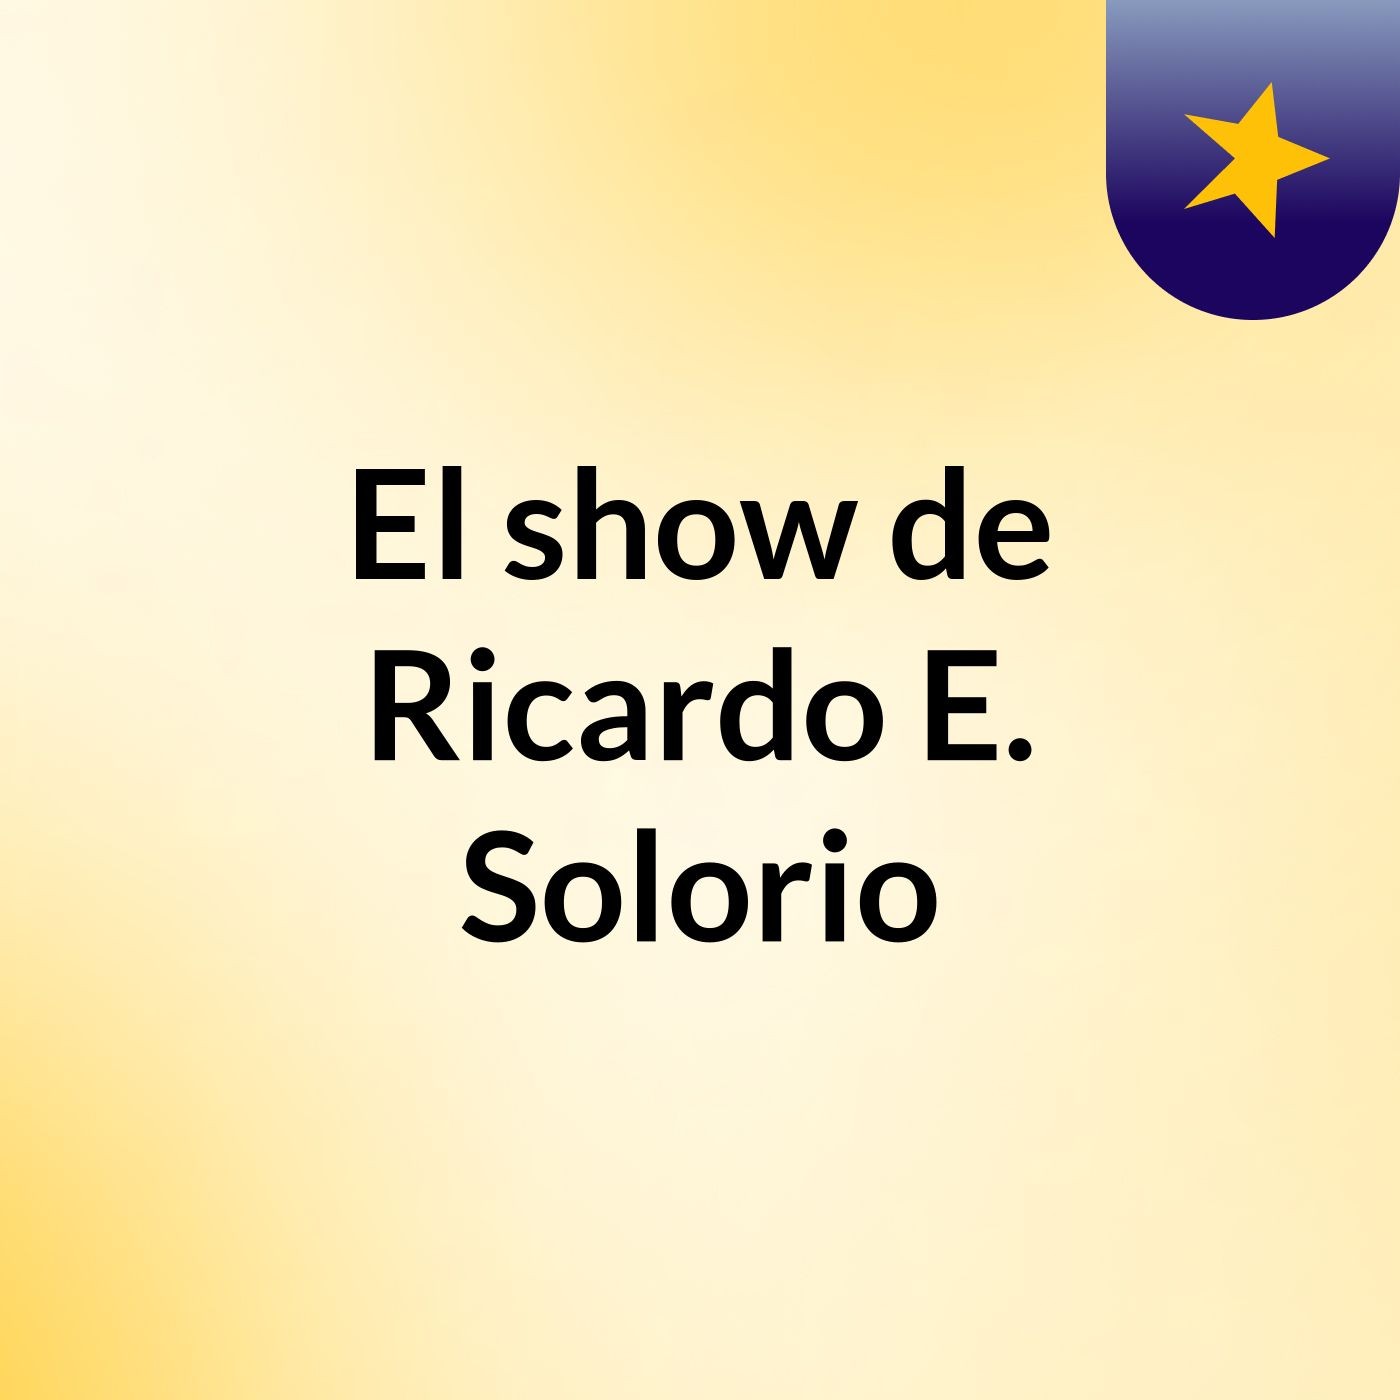 El show de Ricardo E. Solorio